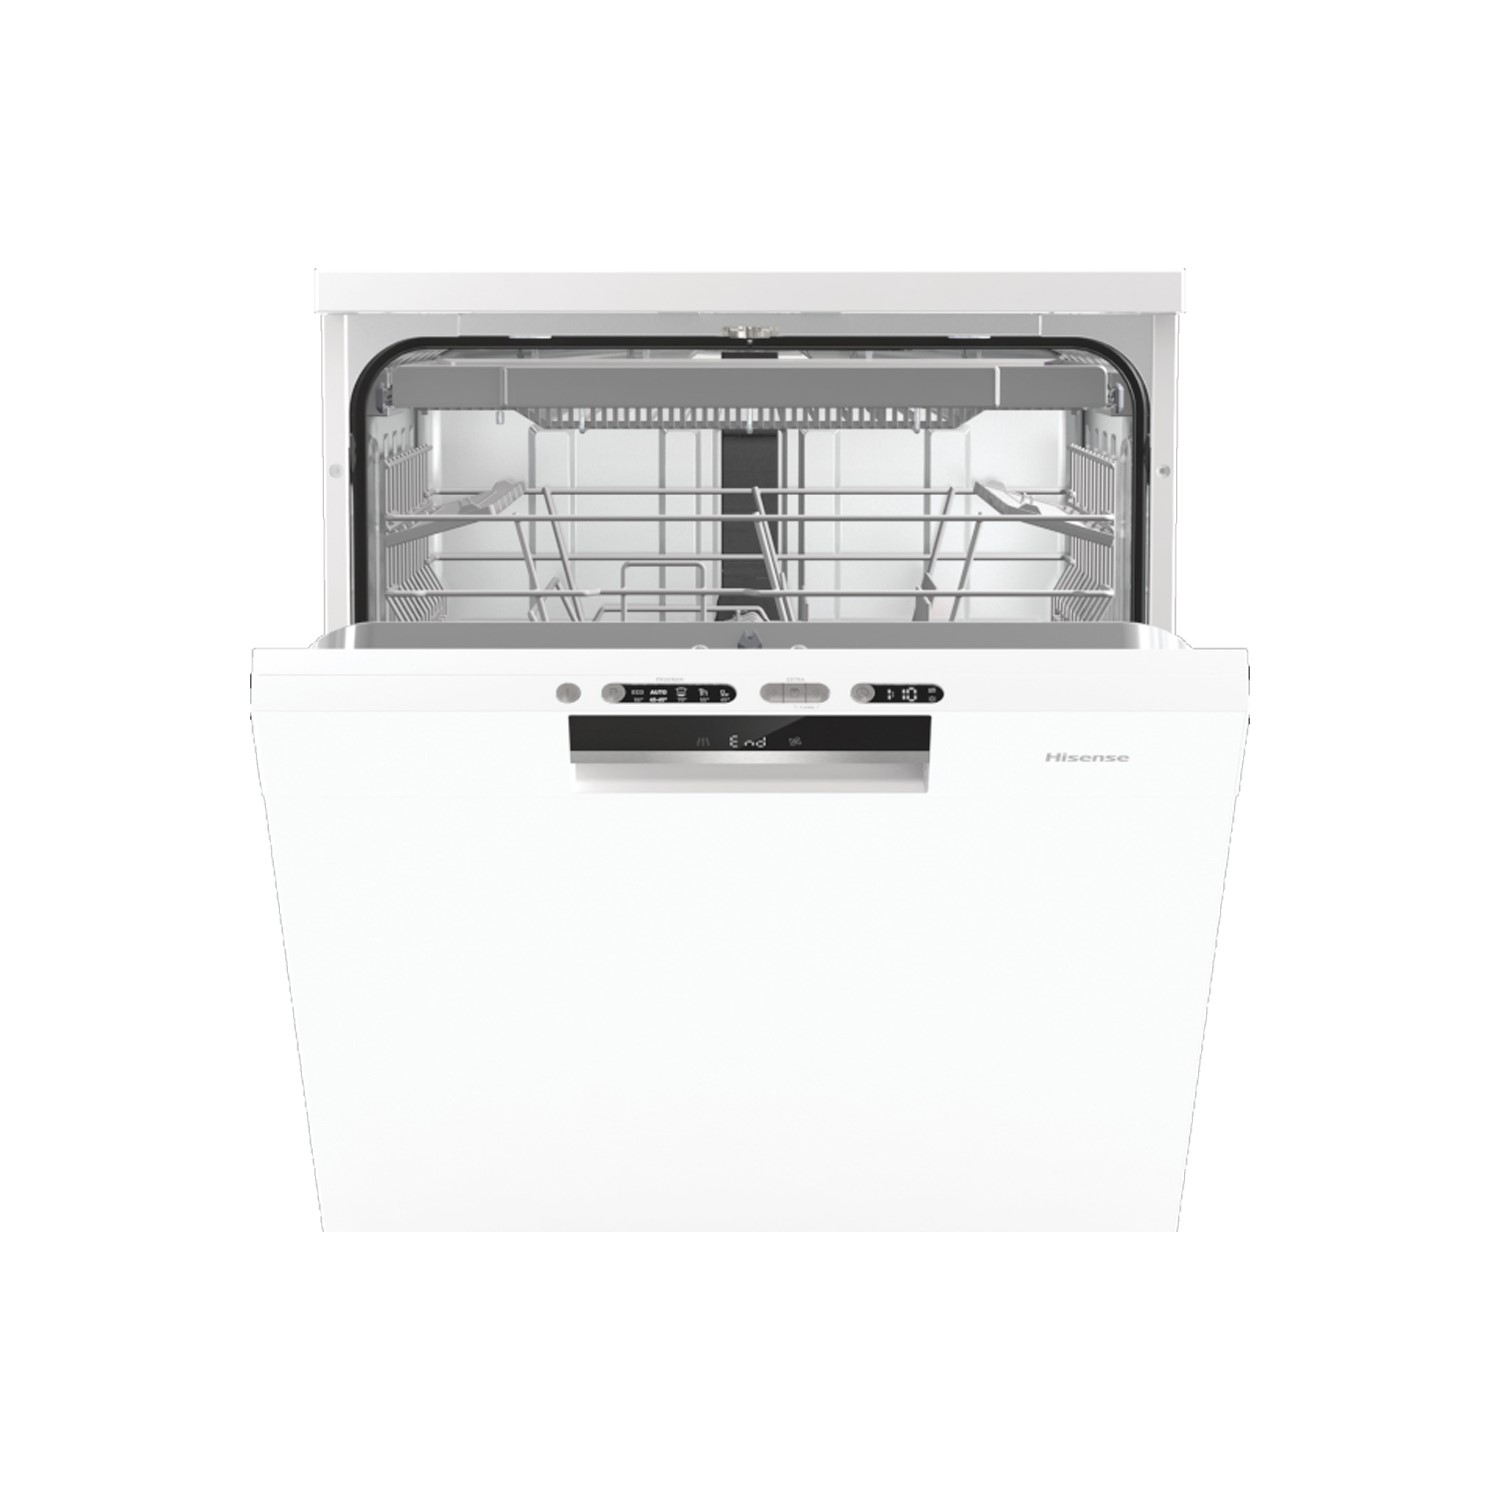 Hisense HS661C60WUK Freestanding Dishwasher - White